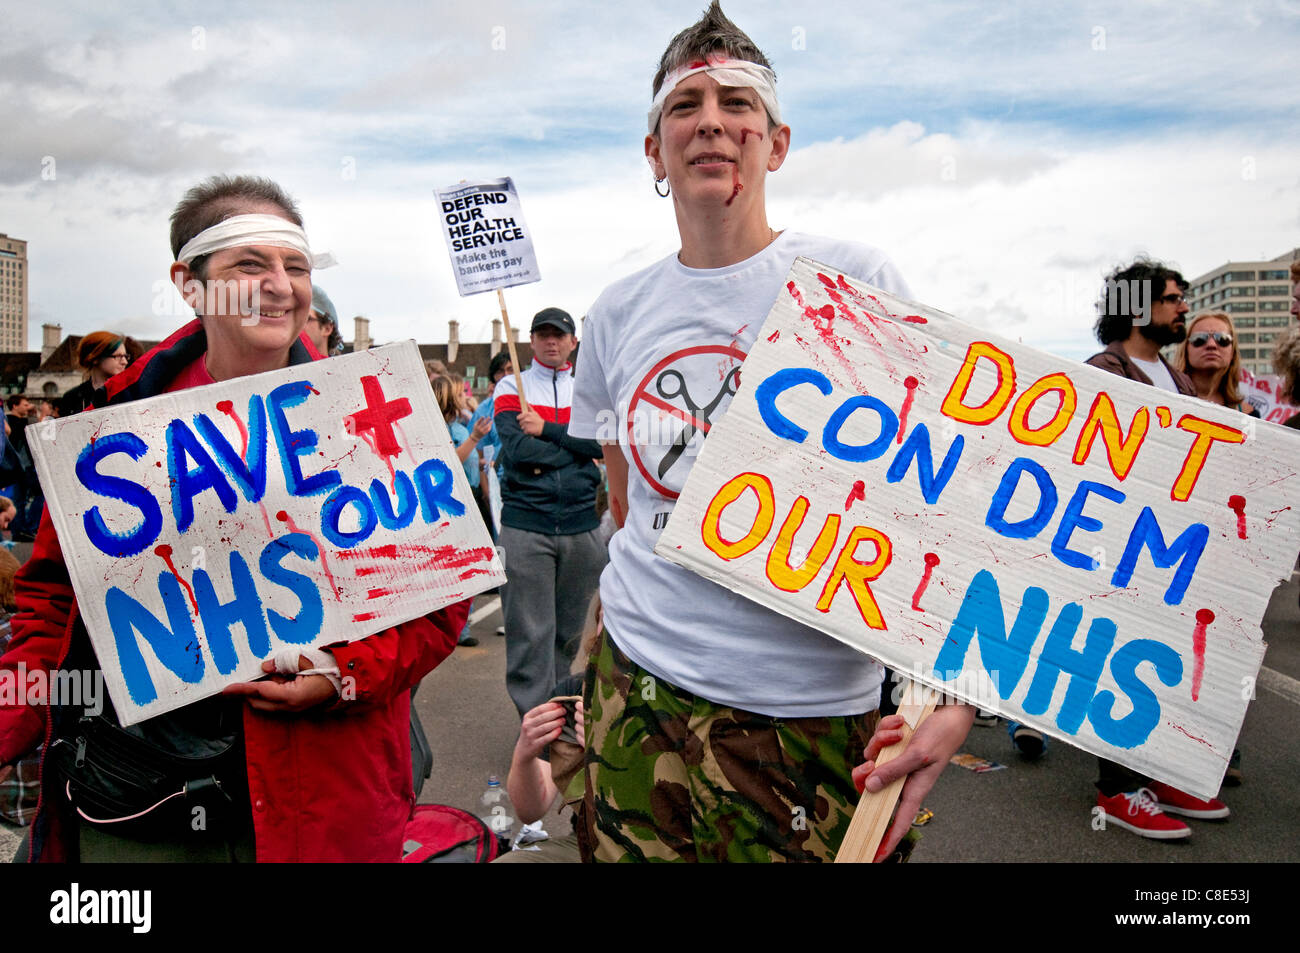 "Stop der Bill" Protest gegen National Health Service schneidet und Privatisierung London Oktober 2011 Stockfoto